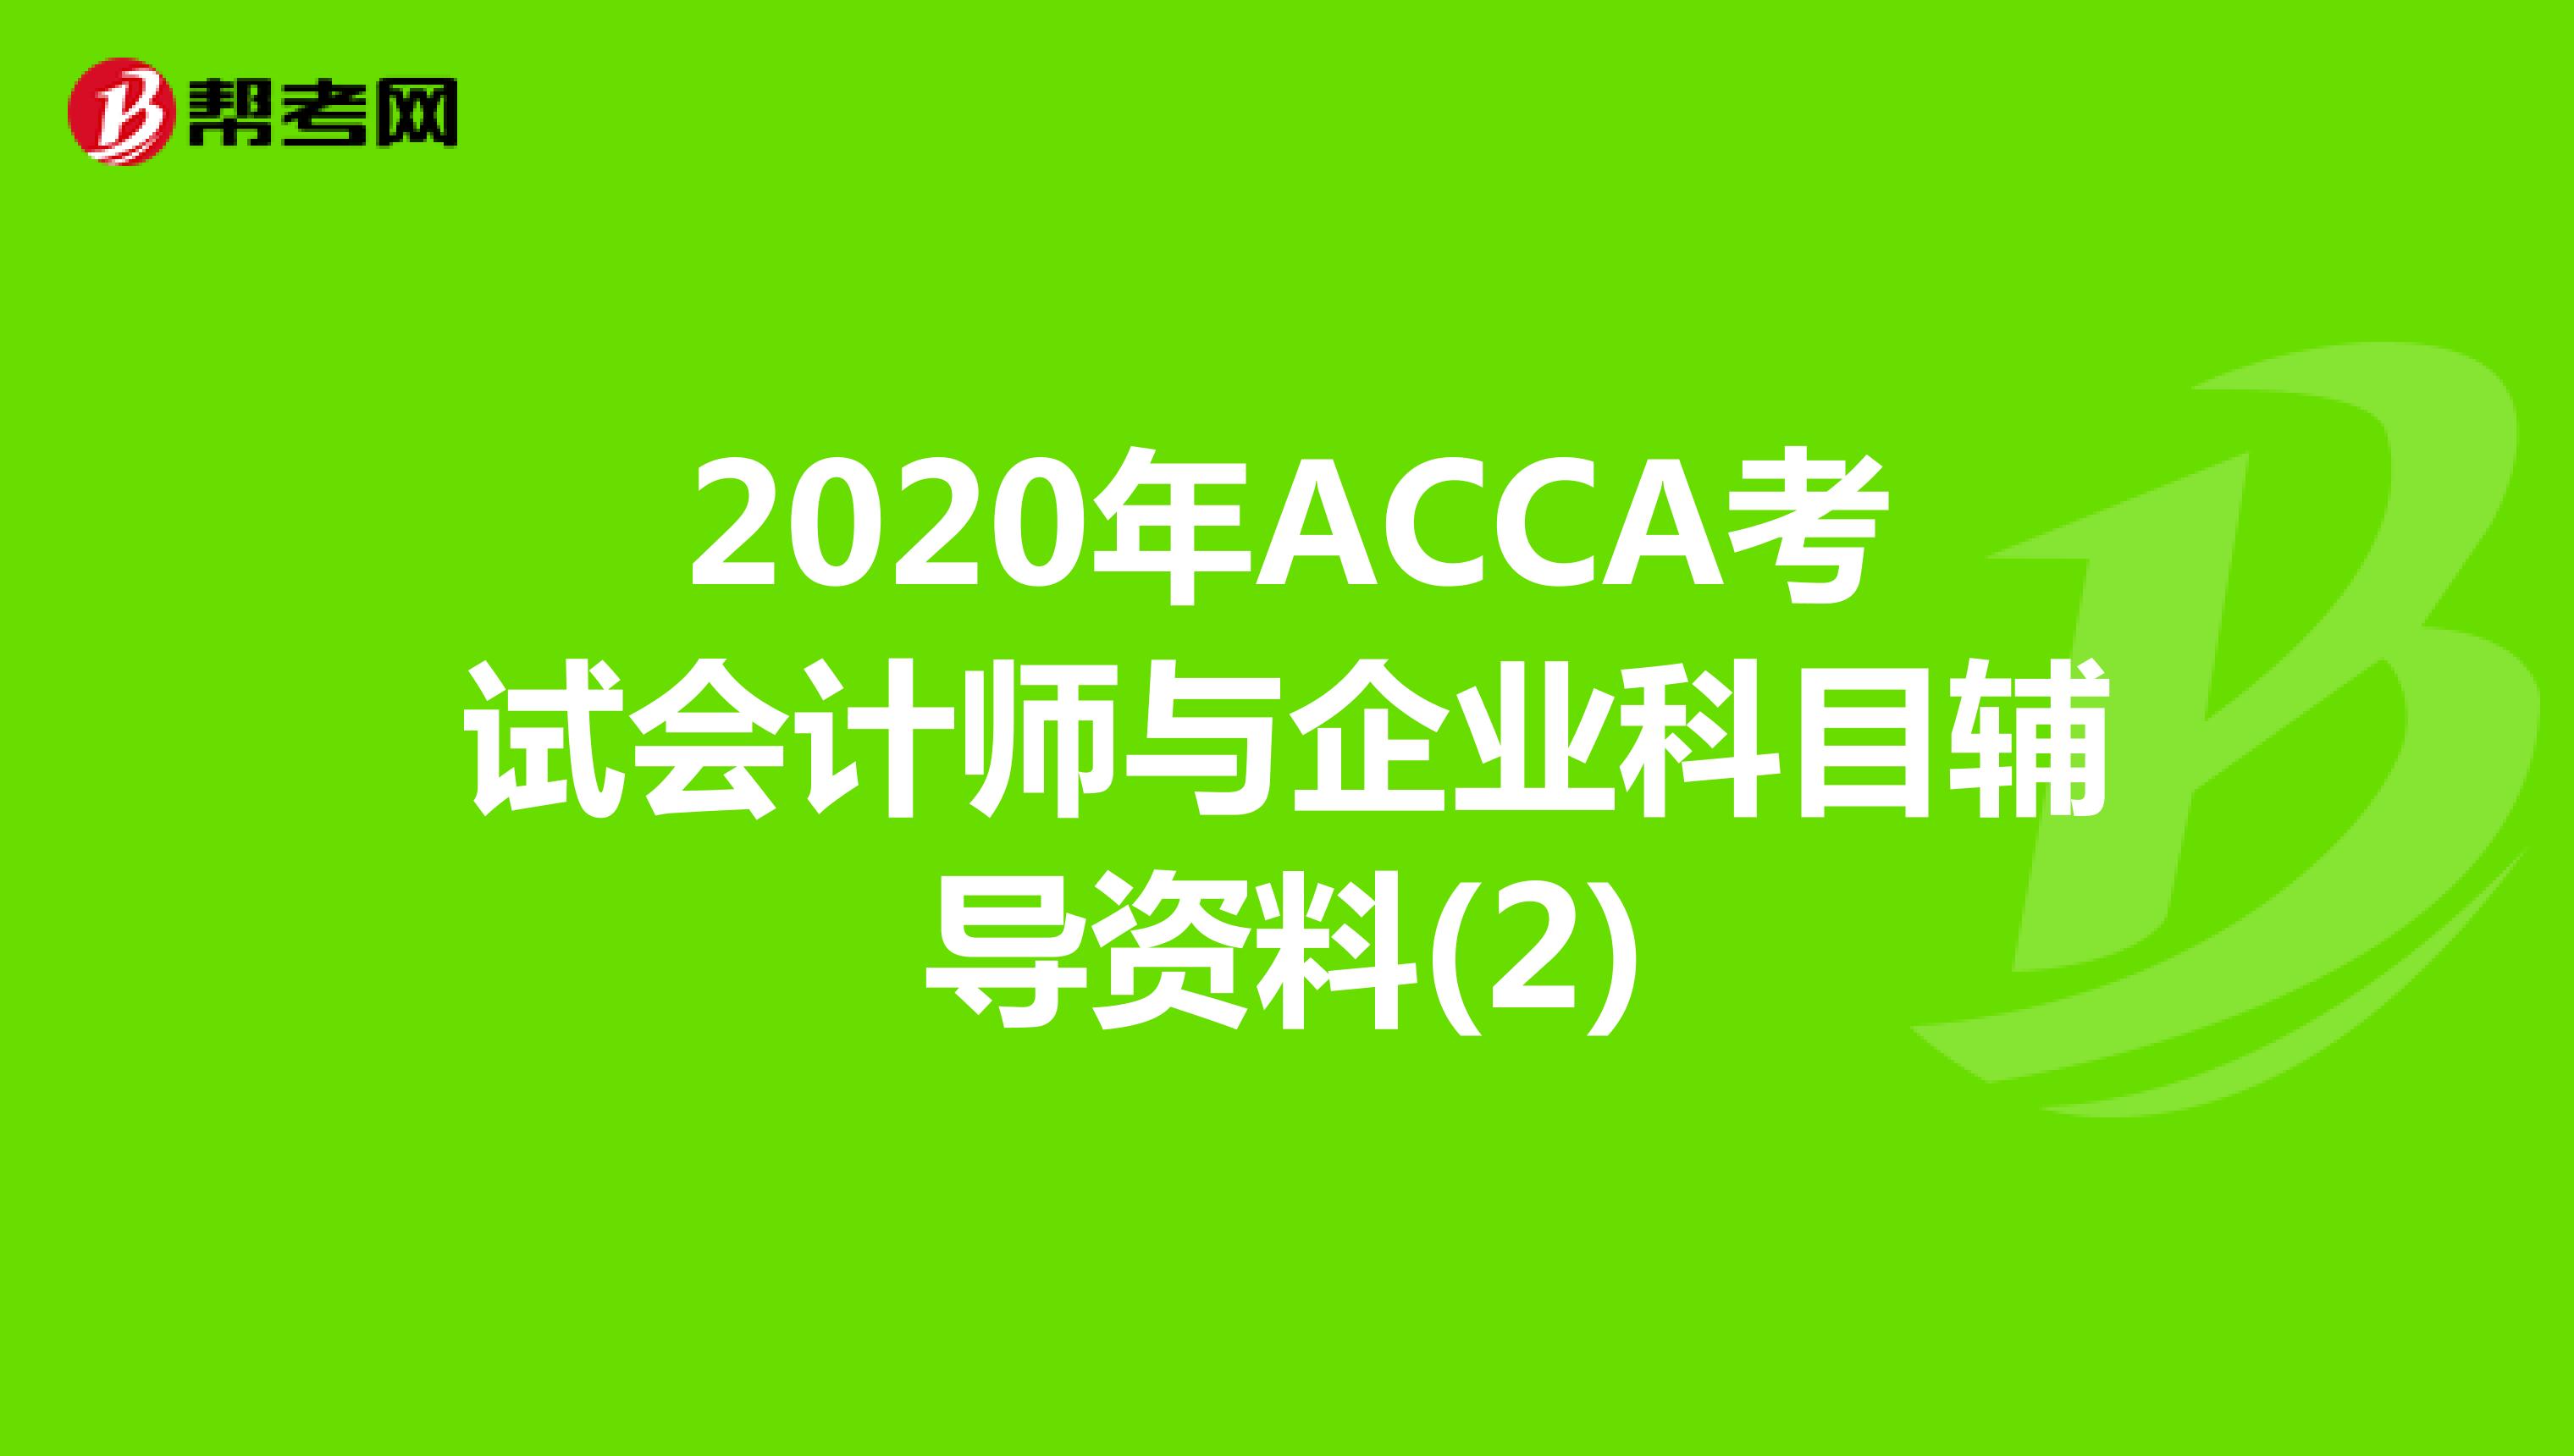 2020年ACCA考试会计师与企业科目辅导资料(2)